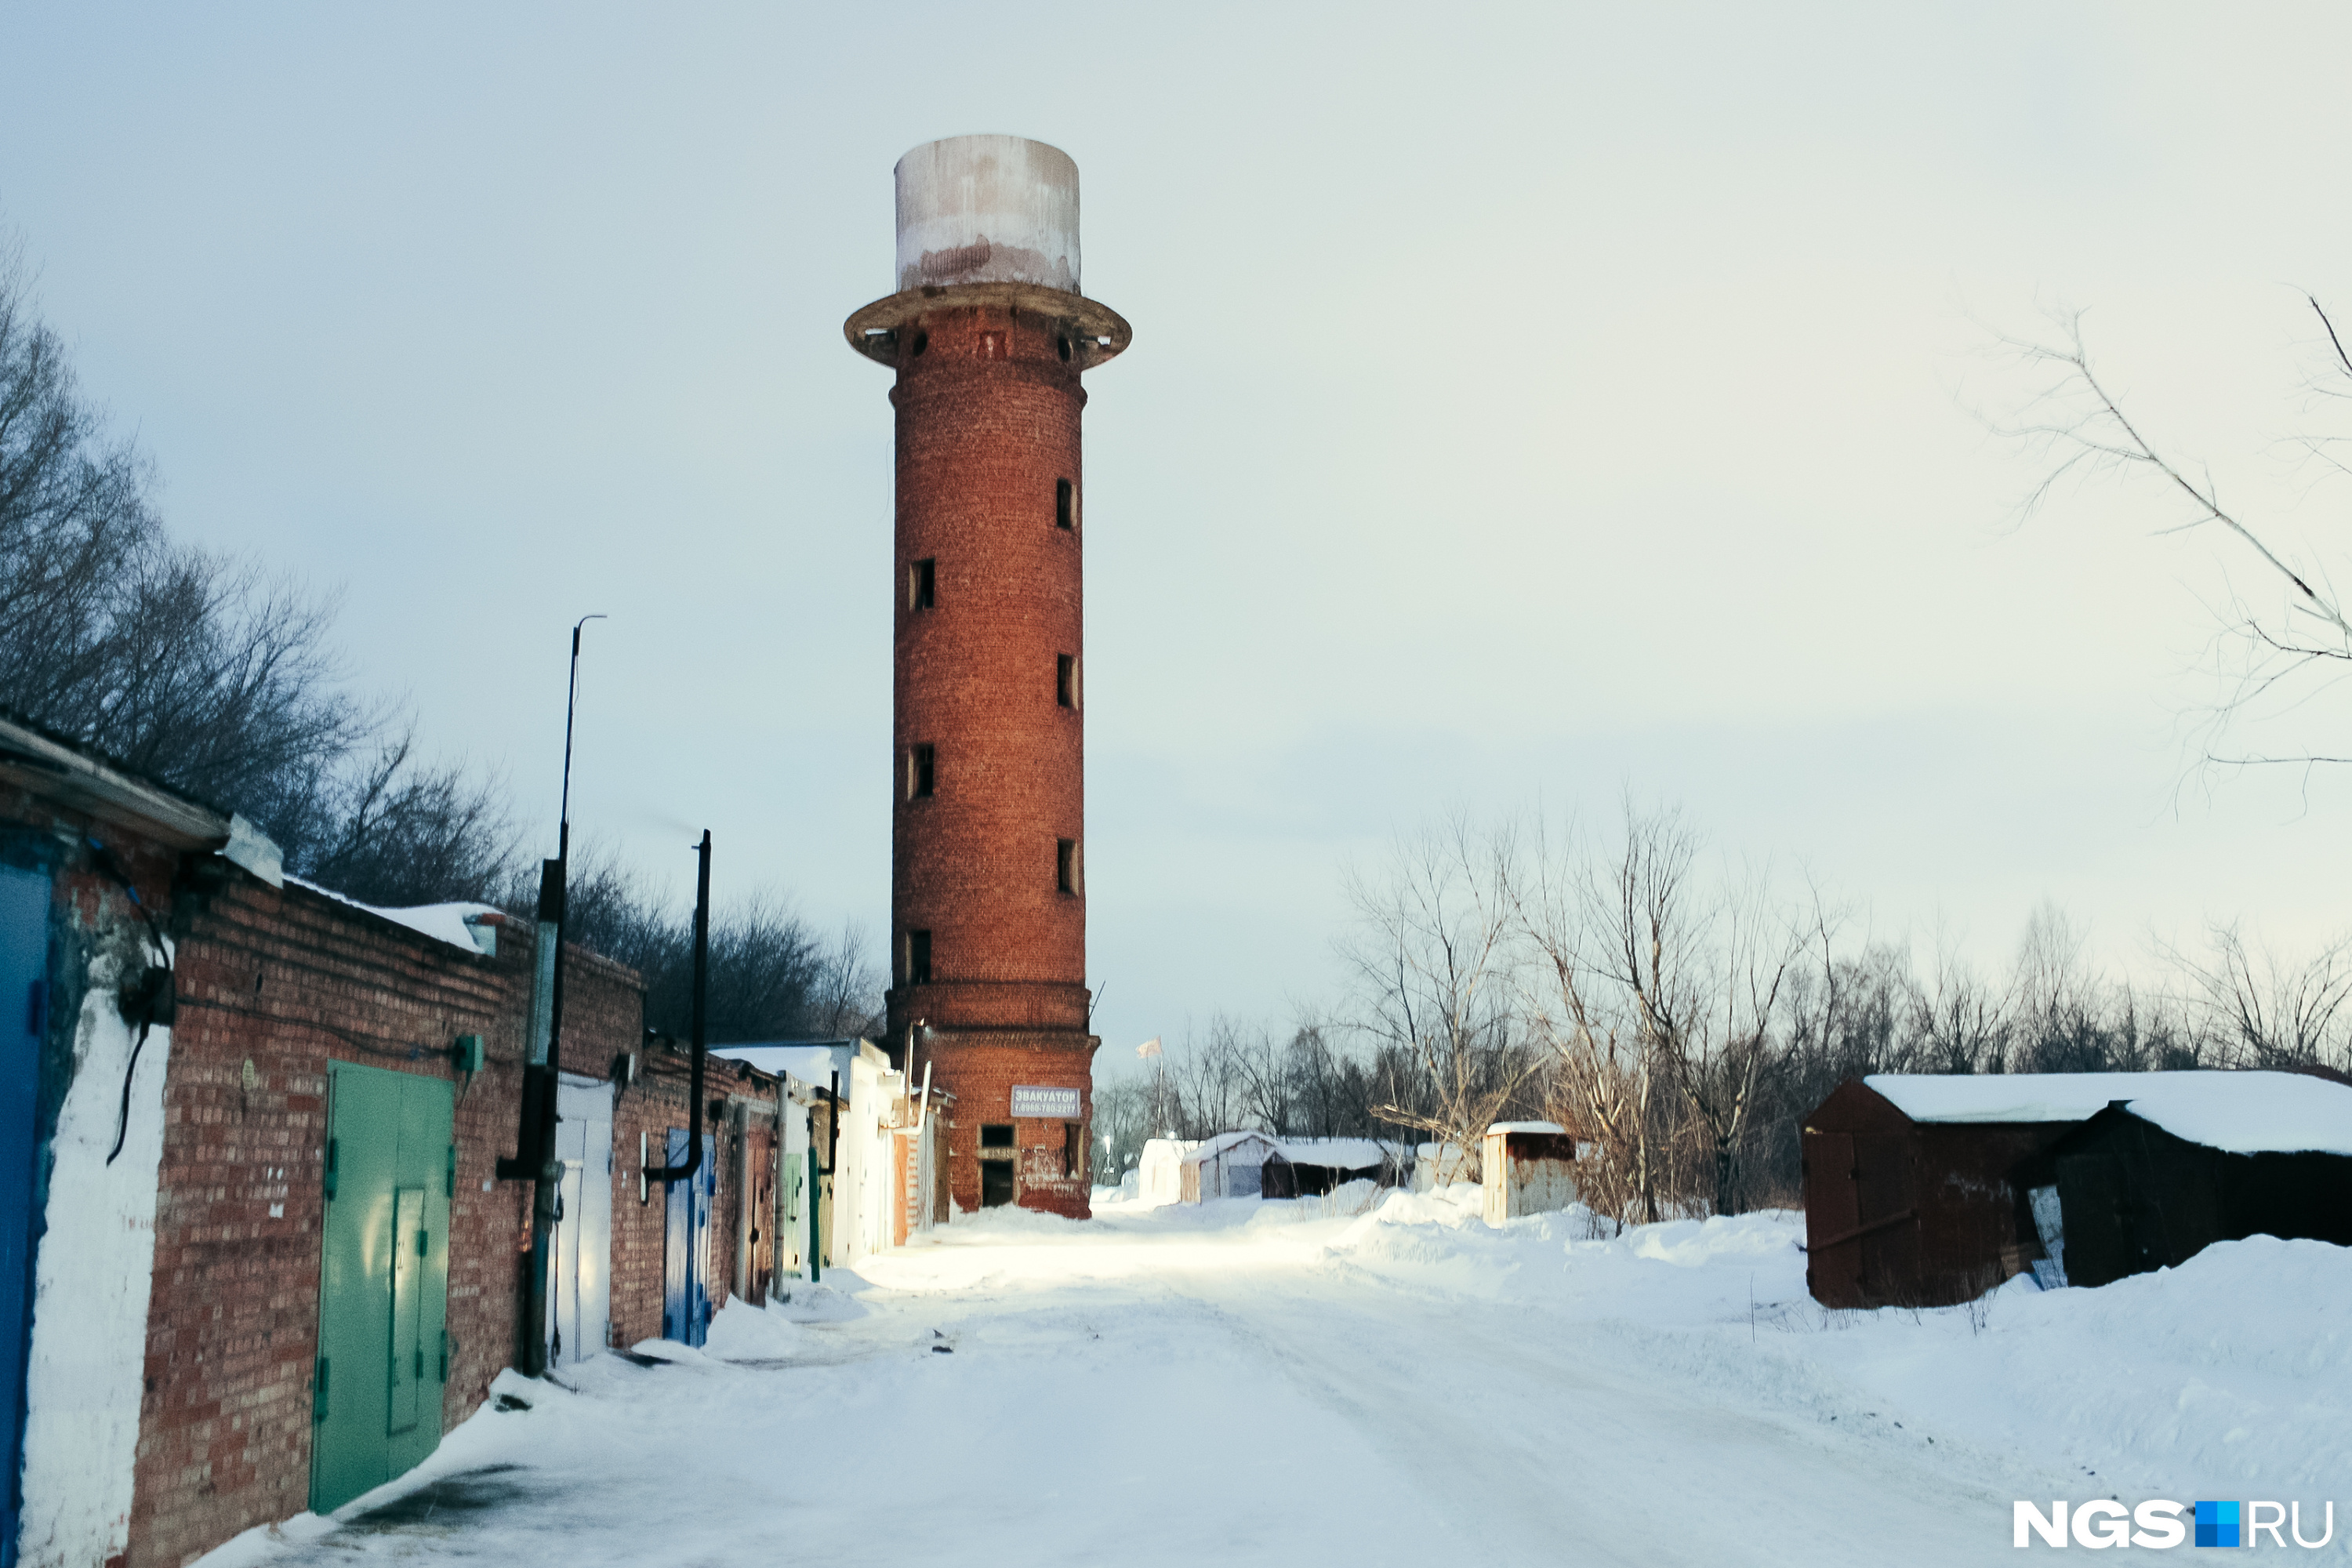 По словам местных жителей, деревянный ярус башни на улице Флотская в Пашине обрушили специально, чтобы старые доски не посыпались на проходящих мимо людей